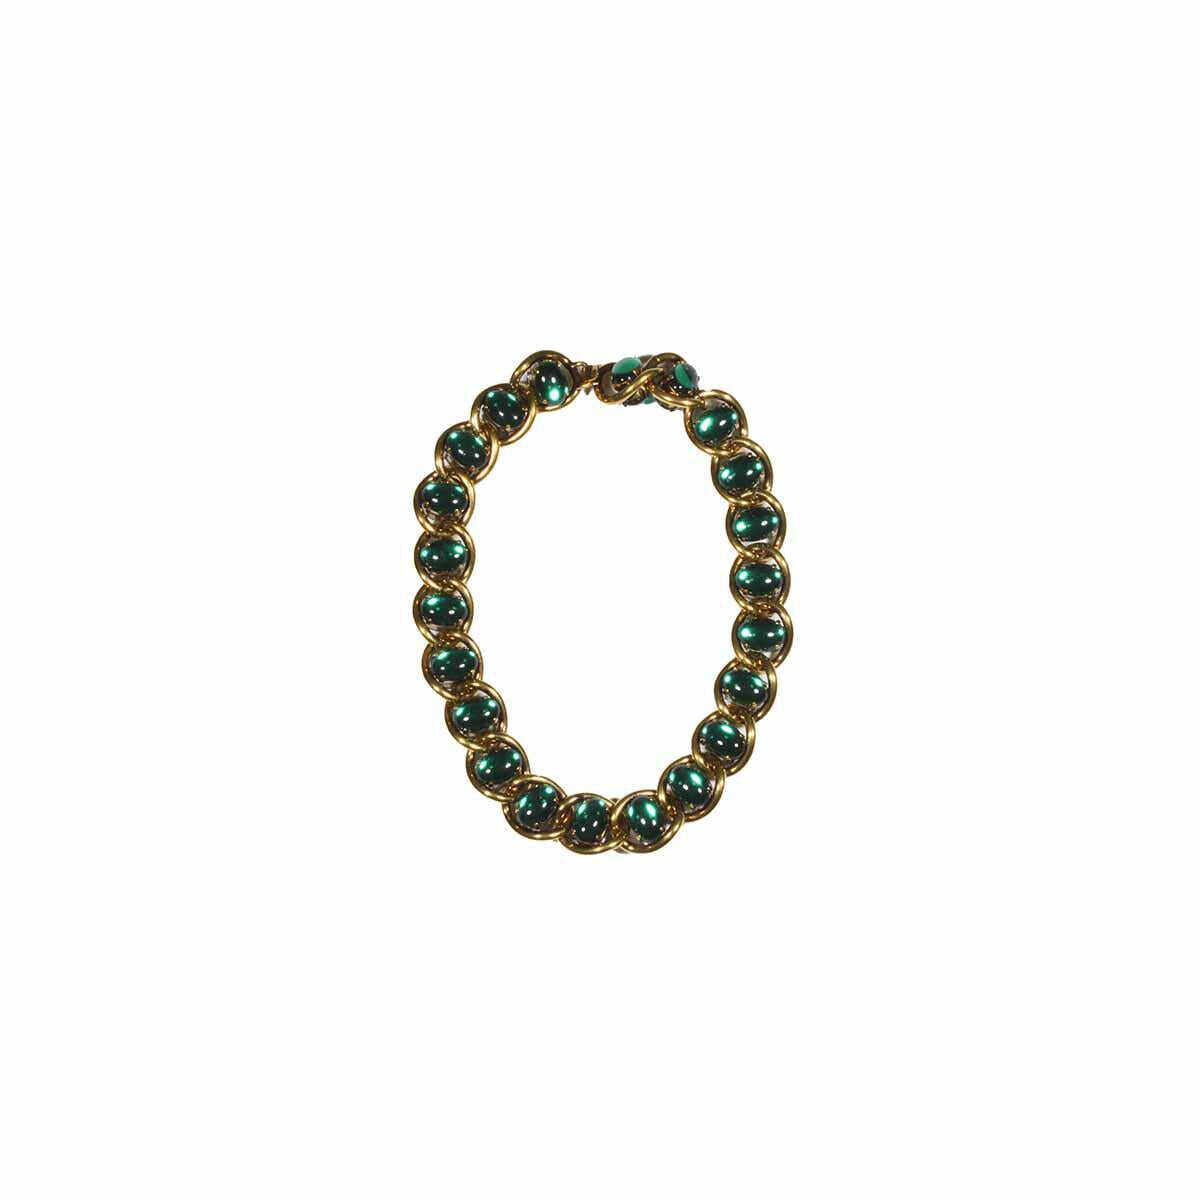 Marni MARNI Gold chain necklace with maxi rhinestones Marni ORO/VERDE